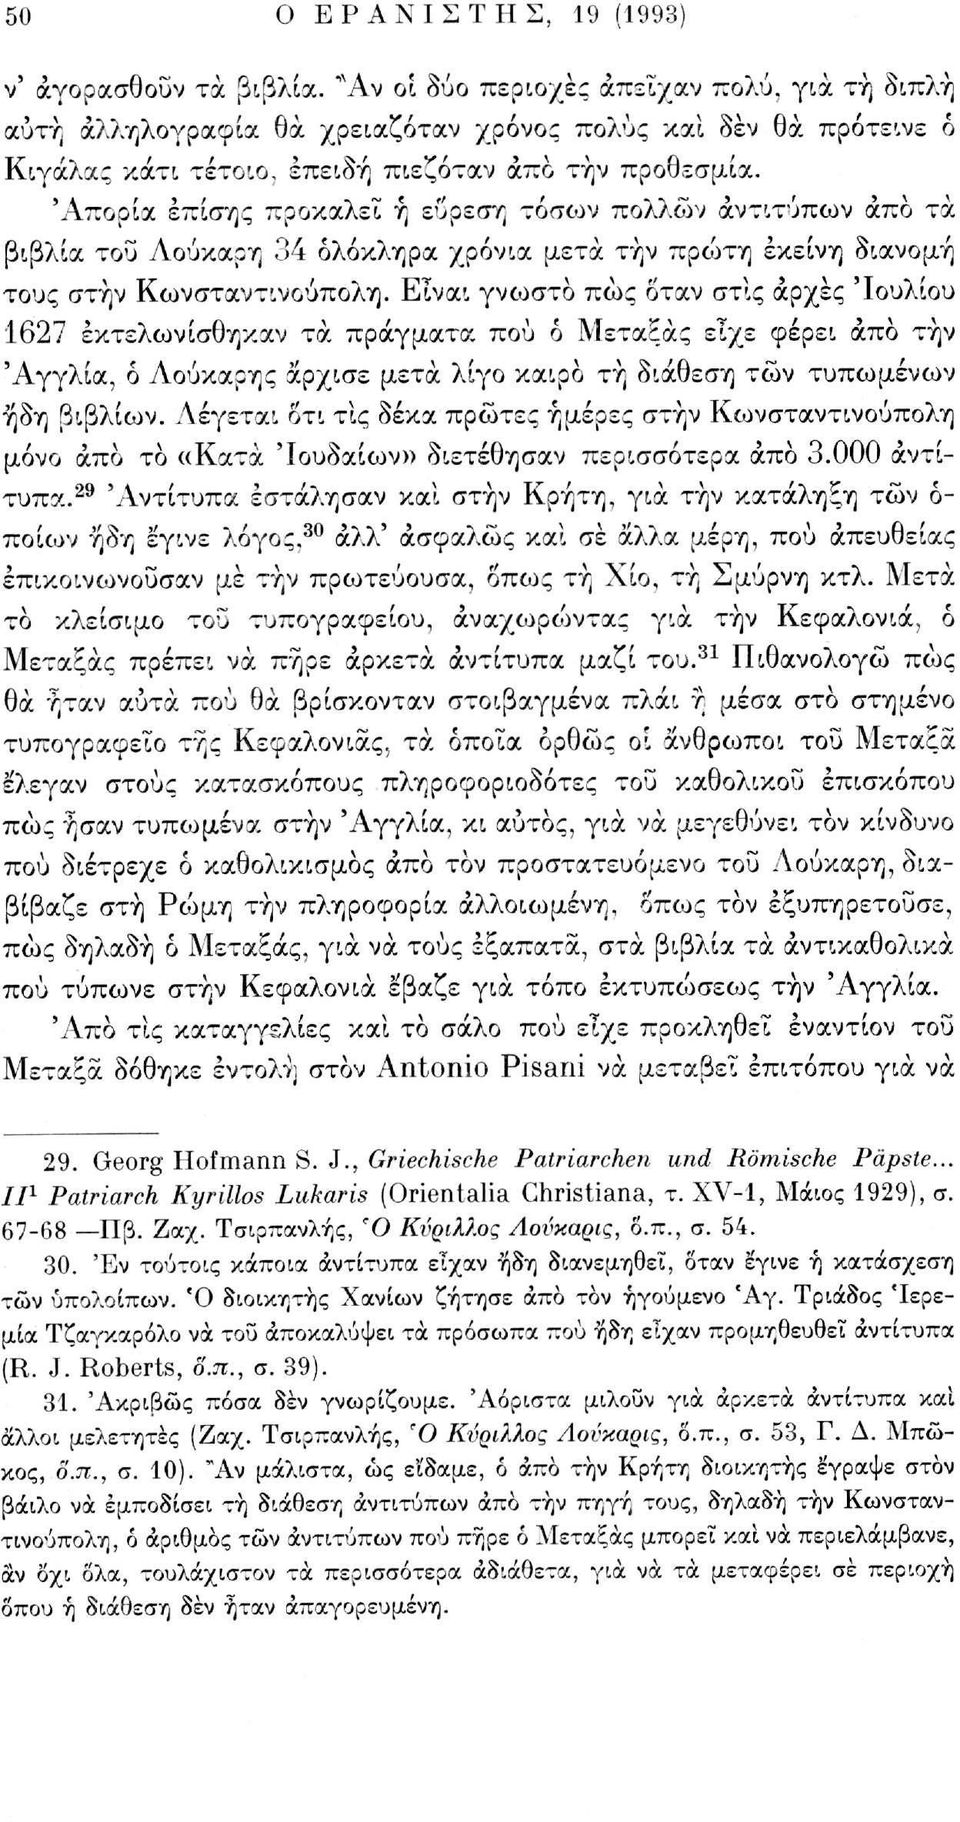 'Απορία επίσης προκαλεί ή εύρεση τόσίον πολλών αντιτύπων άπο τα βιβλία του Λούκαρη 34 ολόκληρα χρόνια μετά τήν πρώτη εκείνη διανομή τους στην Κωνσταντινούπολη.